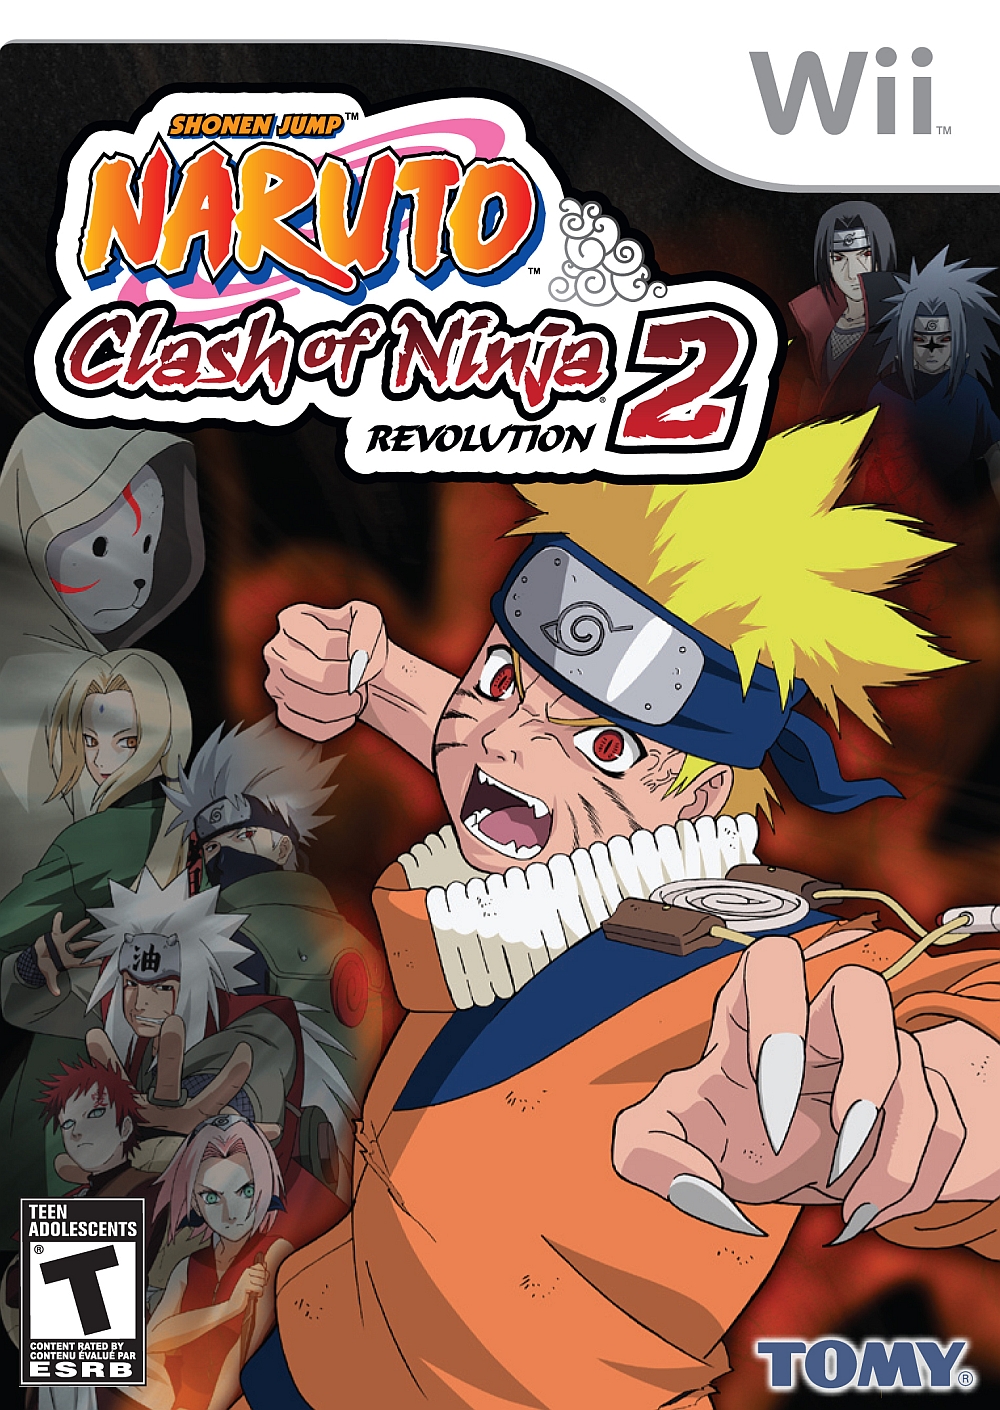 Naruto Shippuden: Naruto vs Sasuke [Videos] - IGN